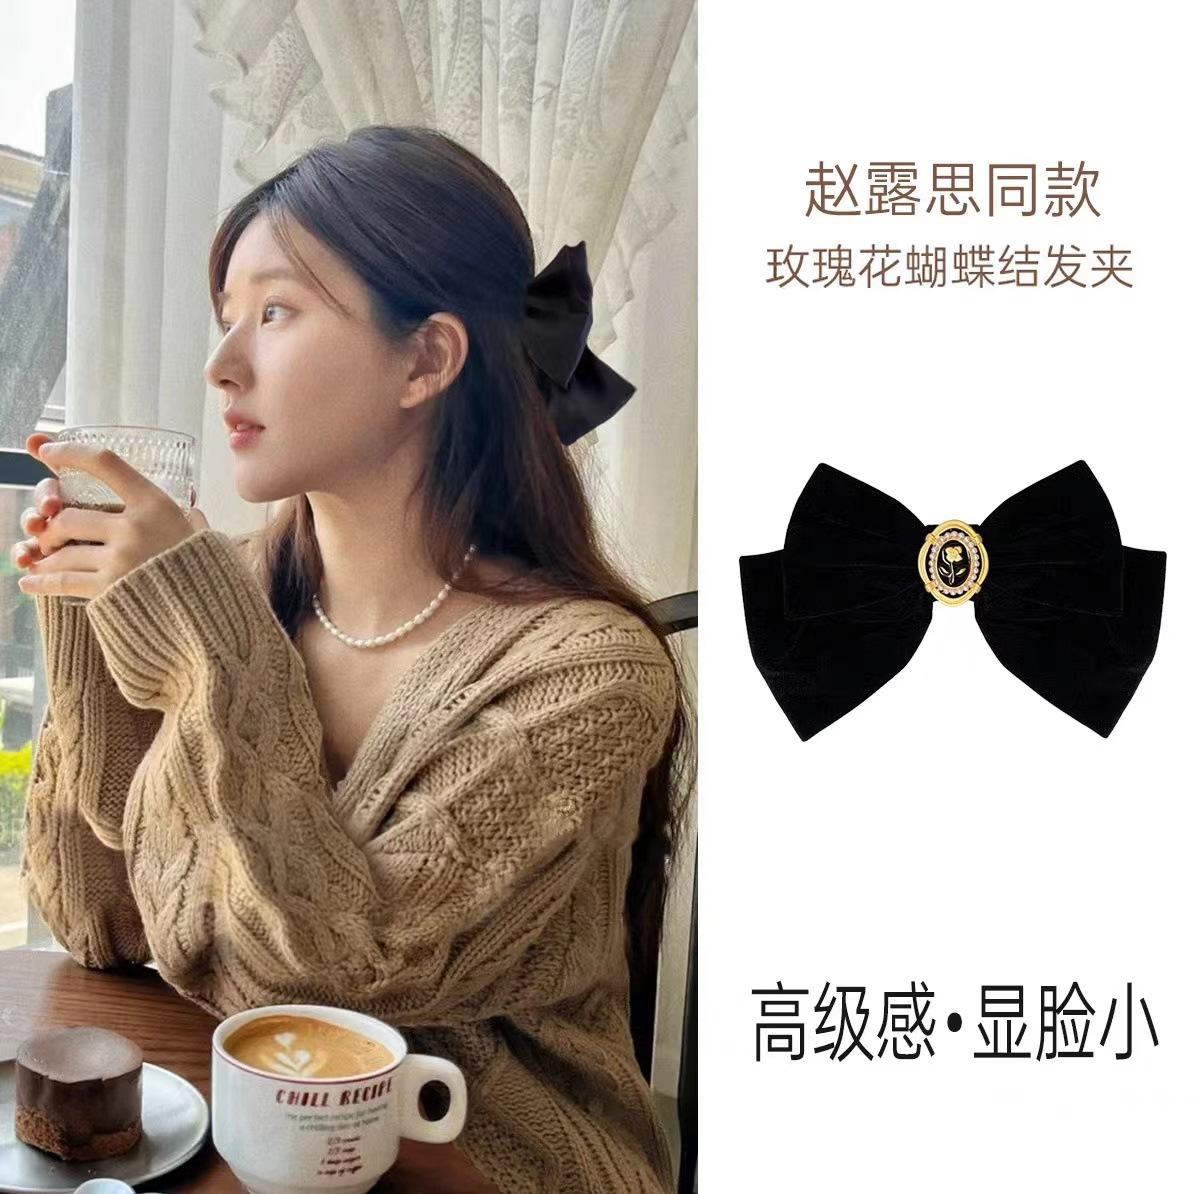 Phụ kiện tóc Doudou Kẹp tóc Kẹp nơ to màu đen sang chảnh vải nhung cao cấp hoa trà tiểu thư thời trang Hàn Quốc FJ018